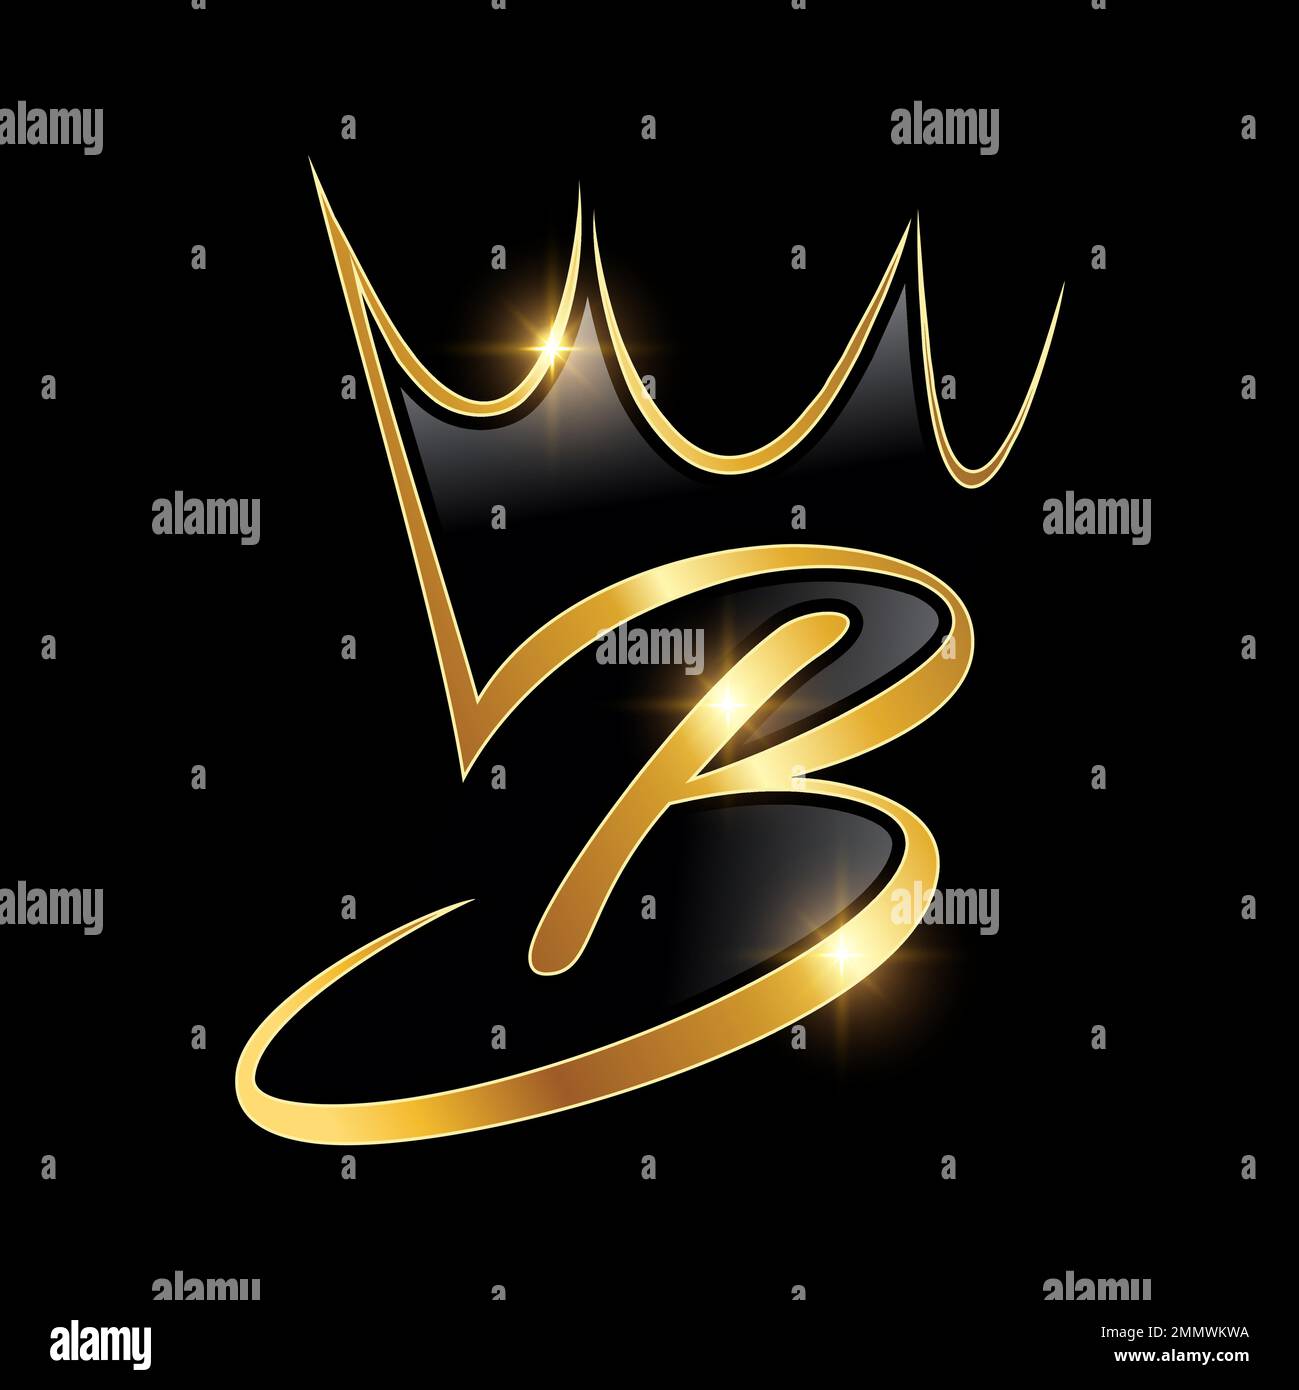 Un vecteur Illustration sur fond noir avec effet brillant or du monogramme doré logo de la couronne lettre initiale B Illustration de Vecteur